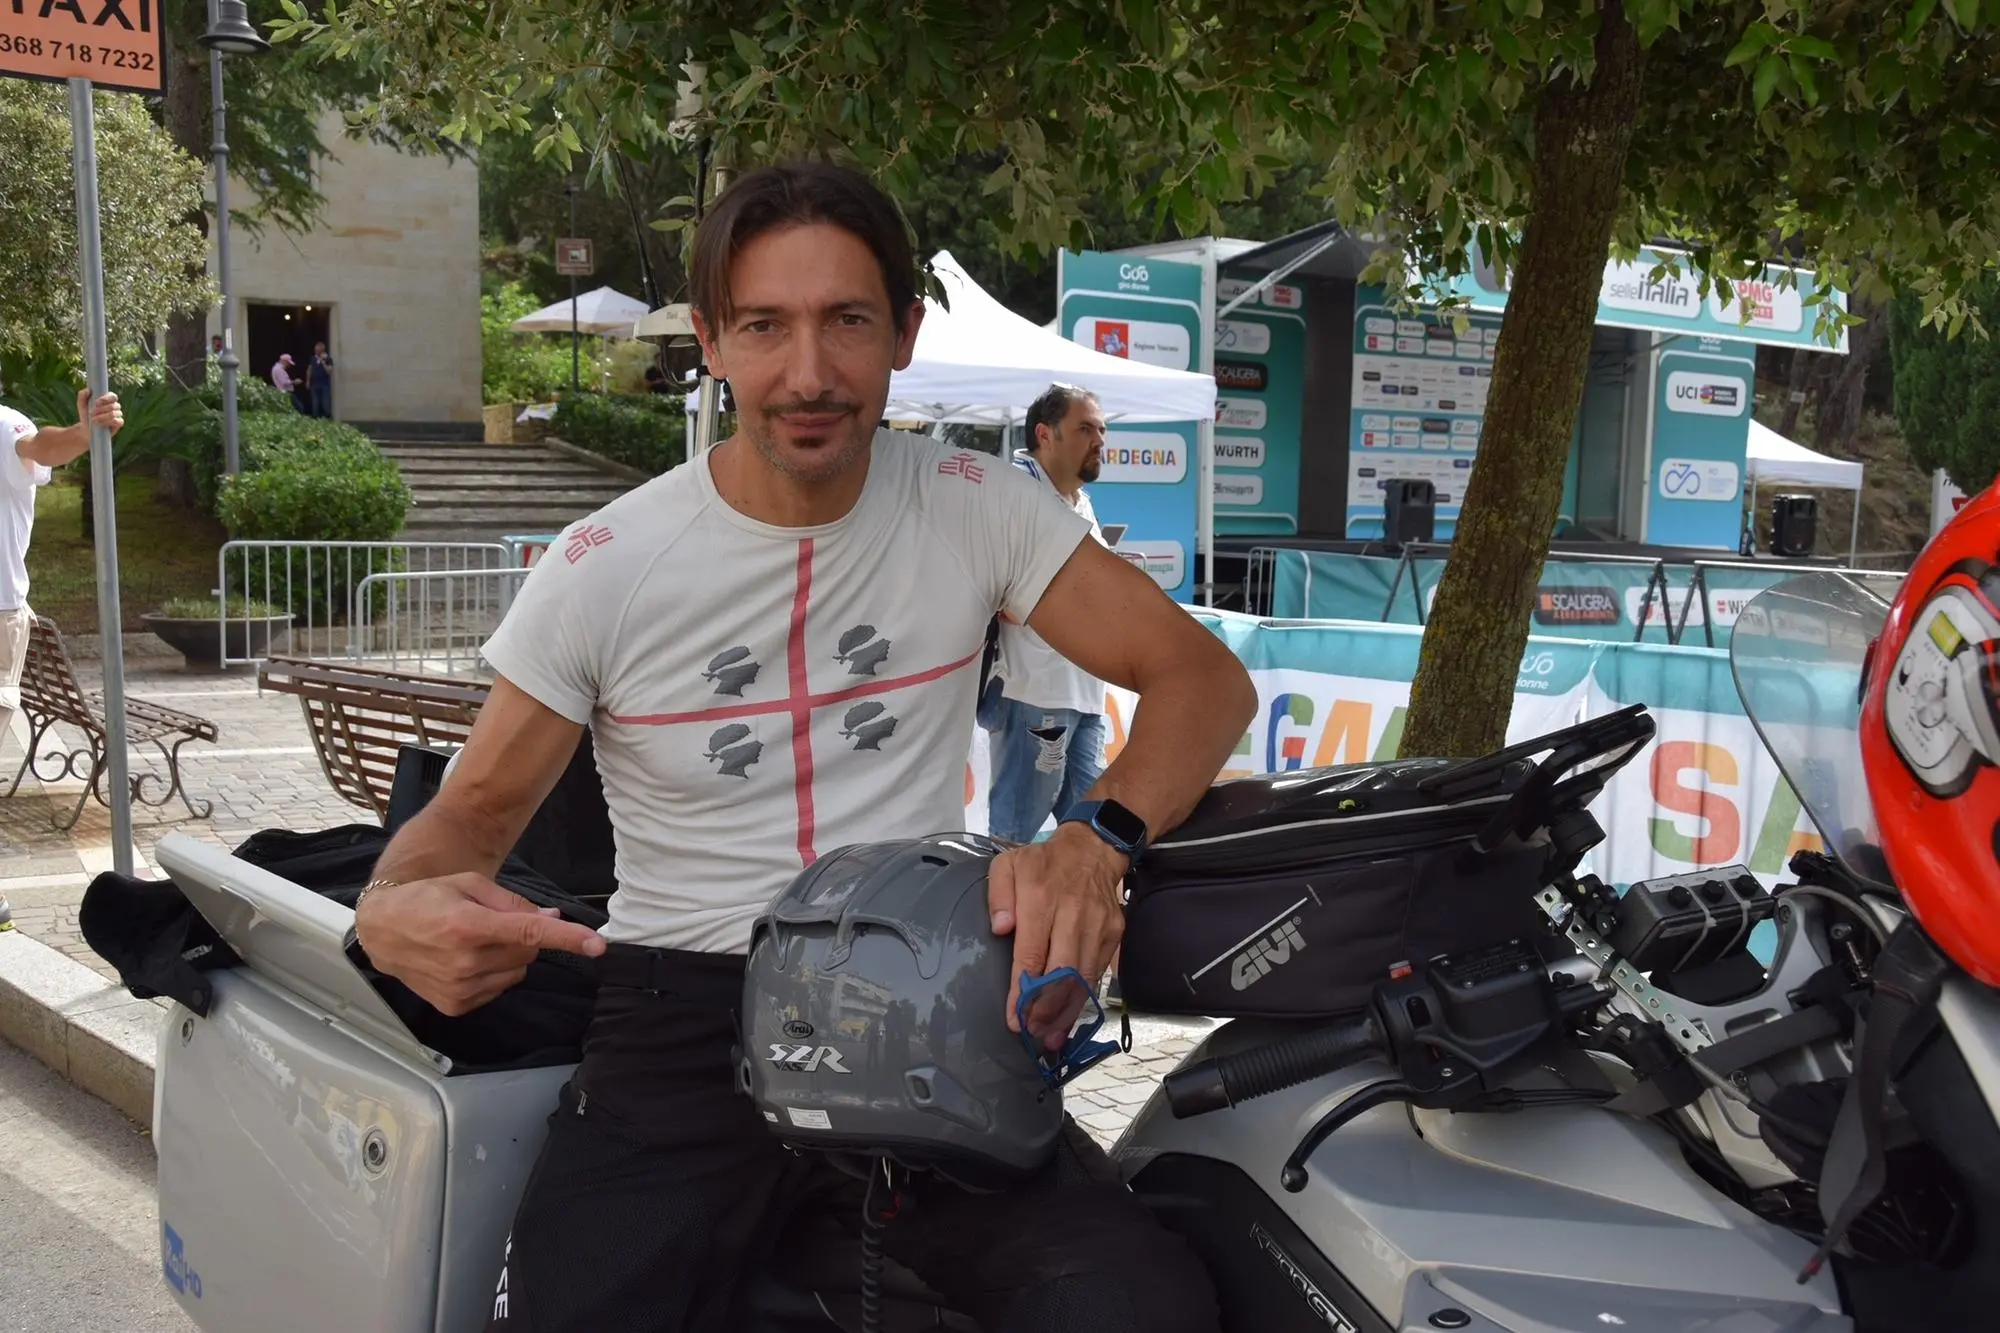 L'operatore nuorese della Rai, Francesco Simula, sulla moto ripresa al  Giro Donne (foto Melis)